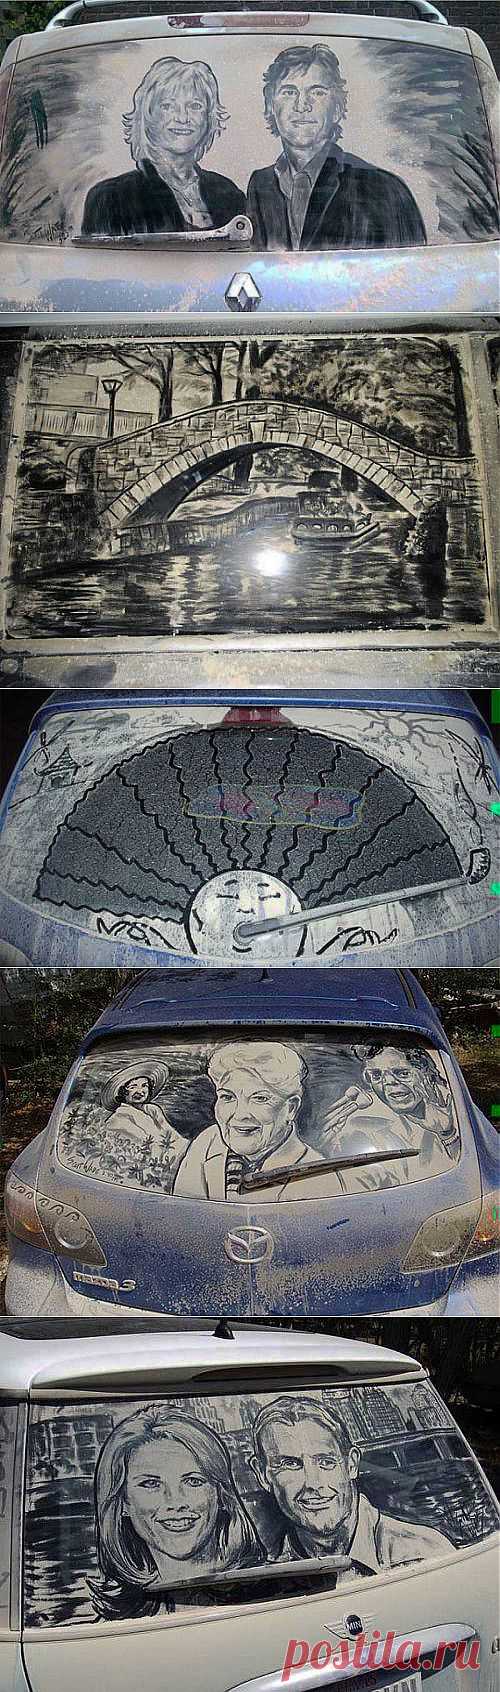 (+1) - "Грязное искусство" — рисунки на автомобилях | МАСТЕРА